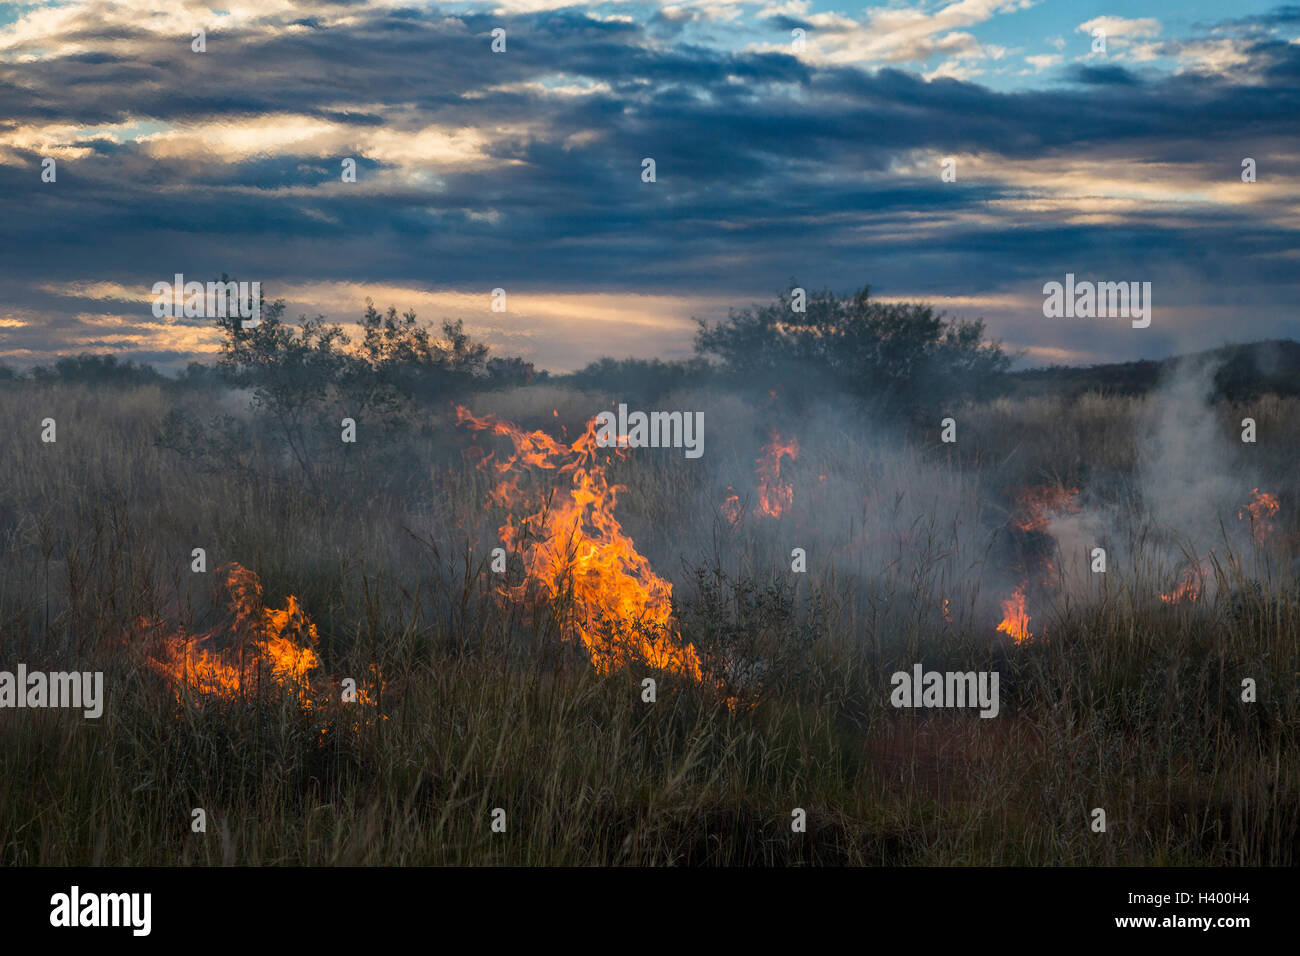 Feuer auf der Wiese gegen bewölktem Himmel während des Sonnenuntergangs, Newman, Western Australia, Australien Stockfoto